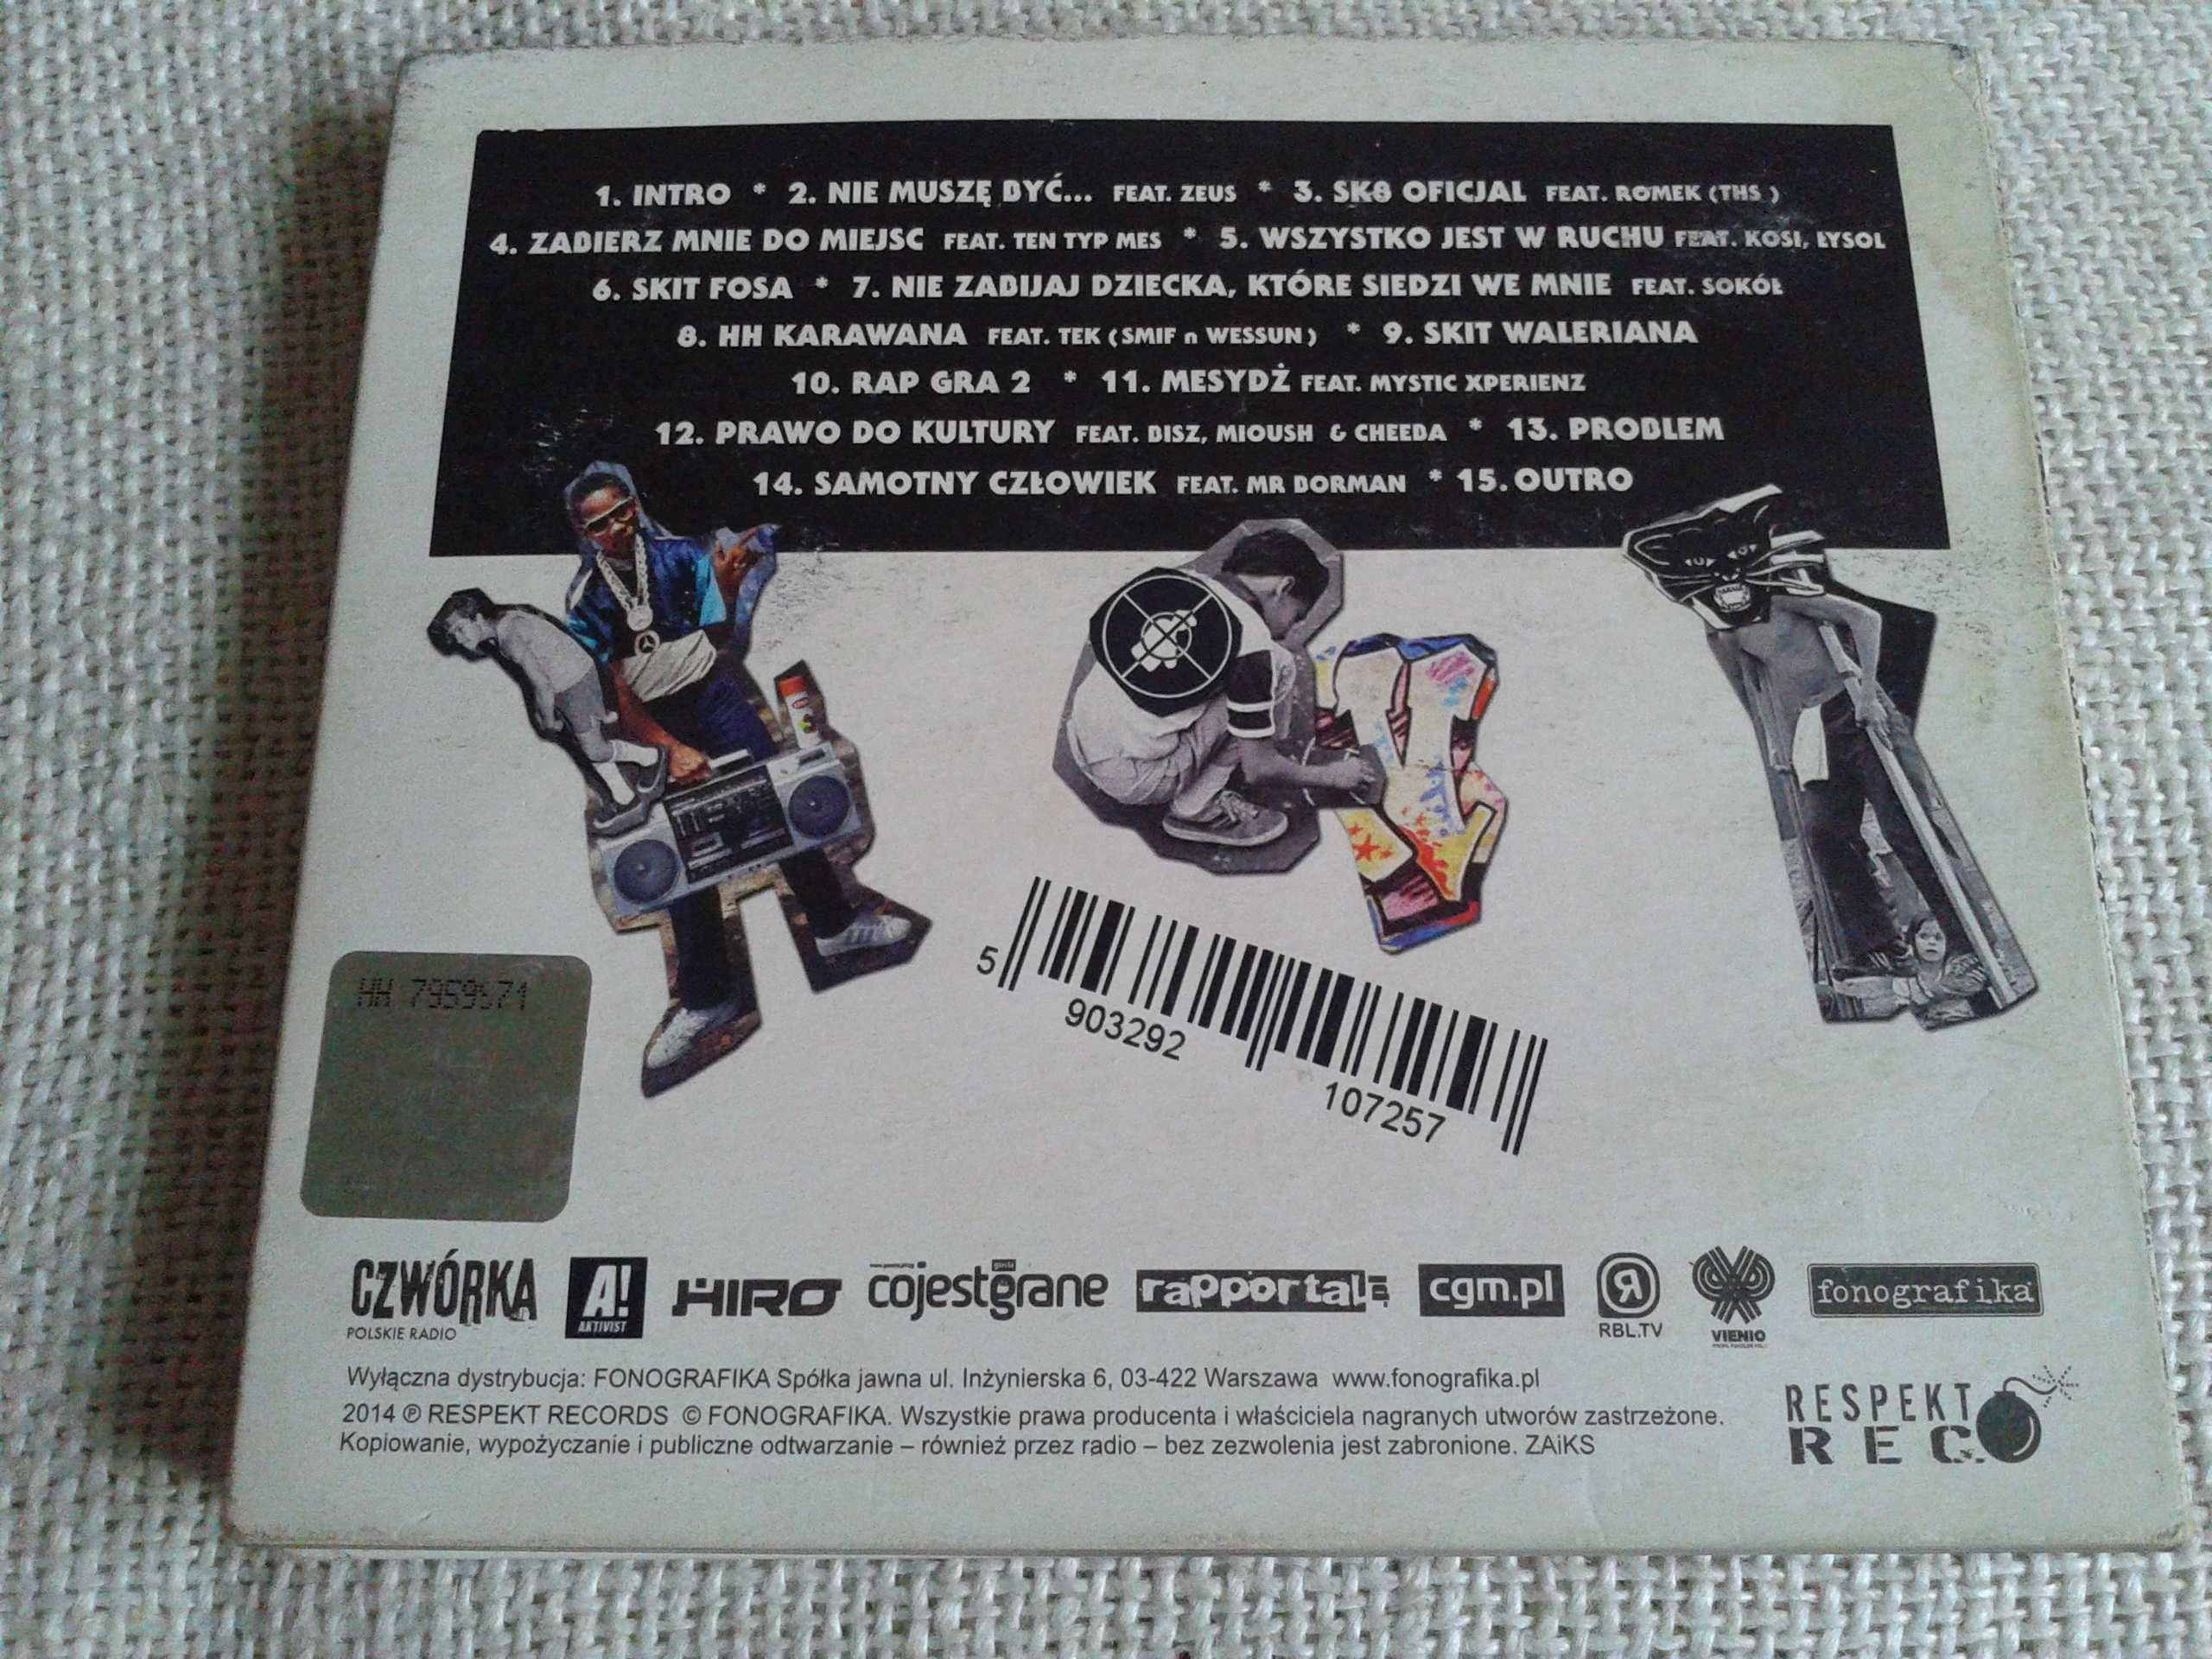 Vienio - Etos 2  CD